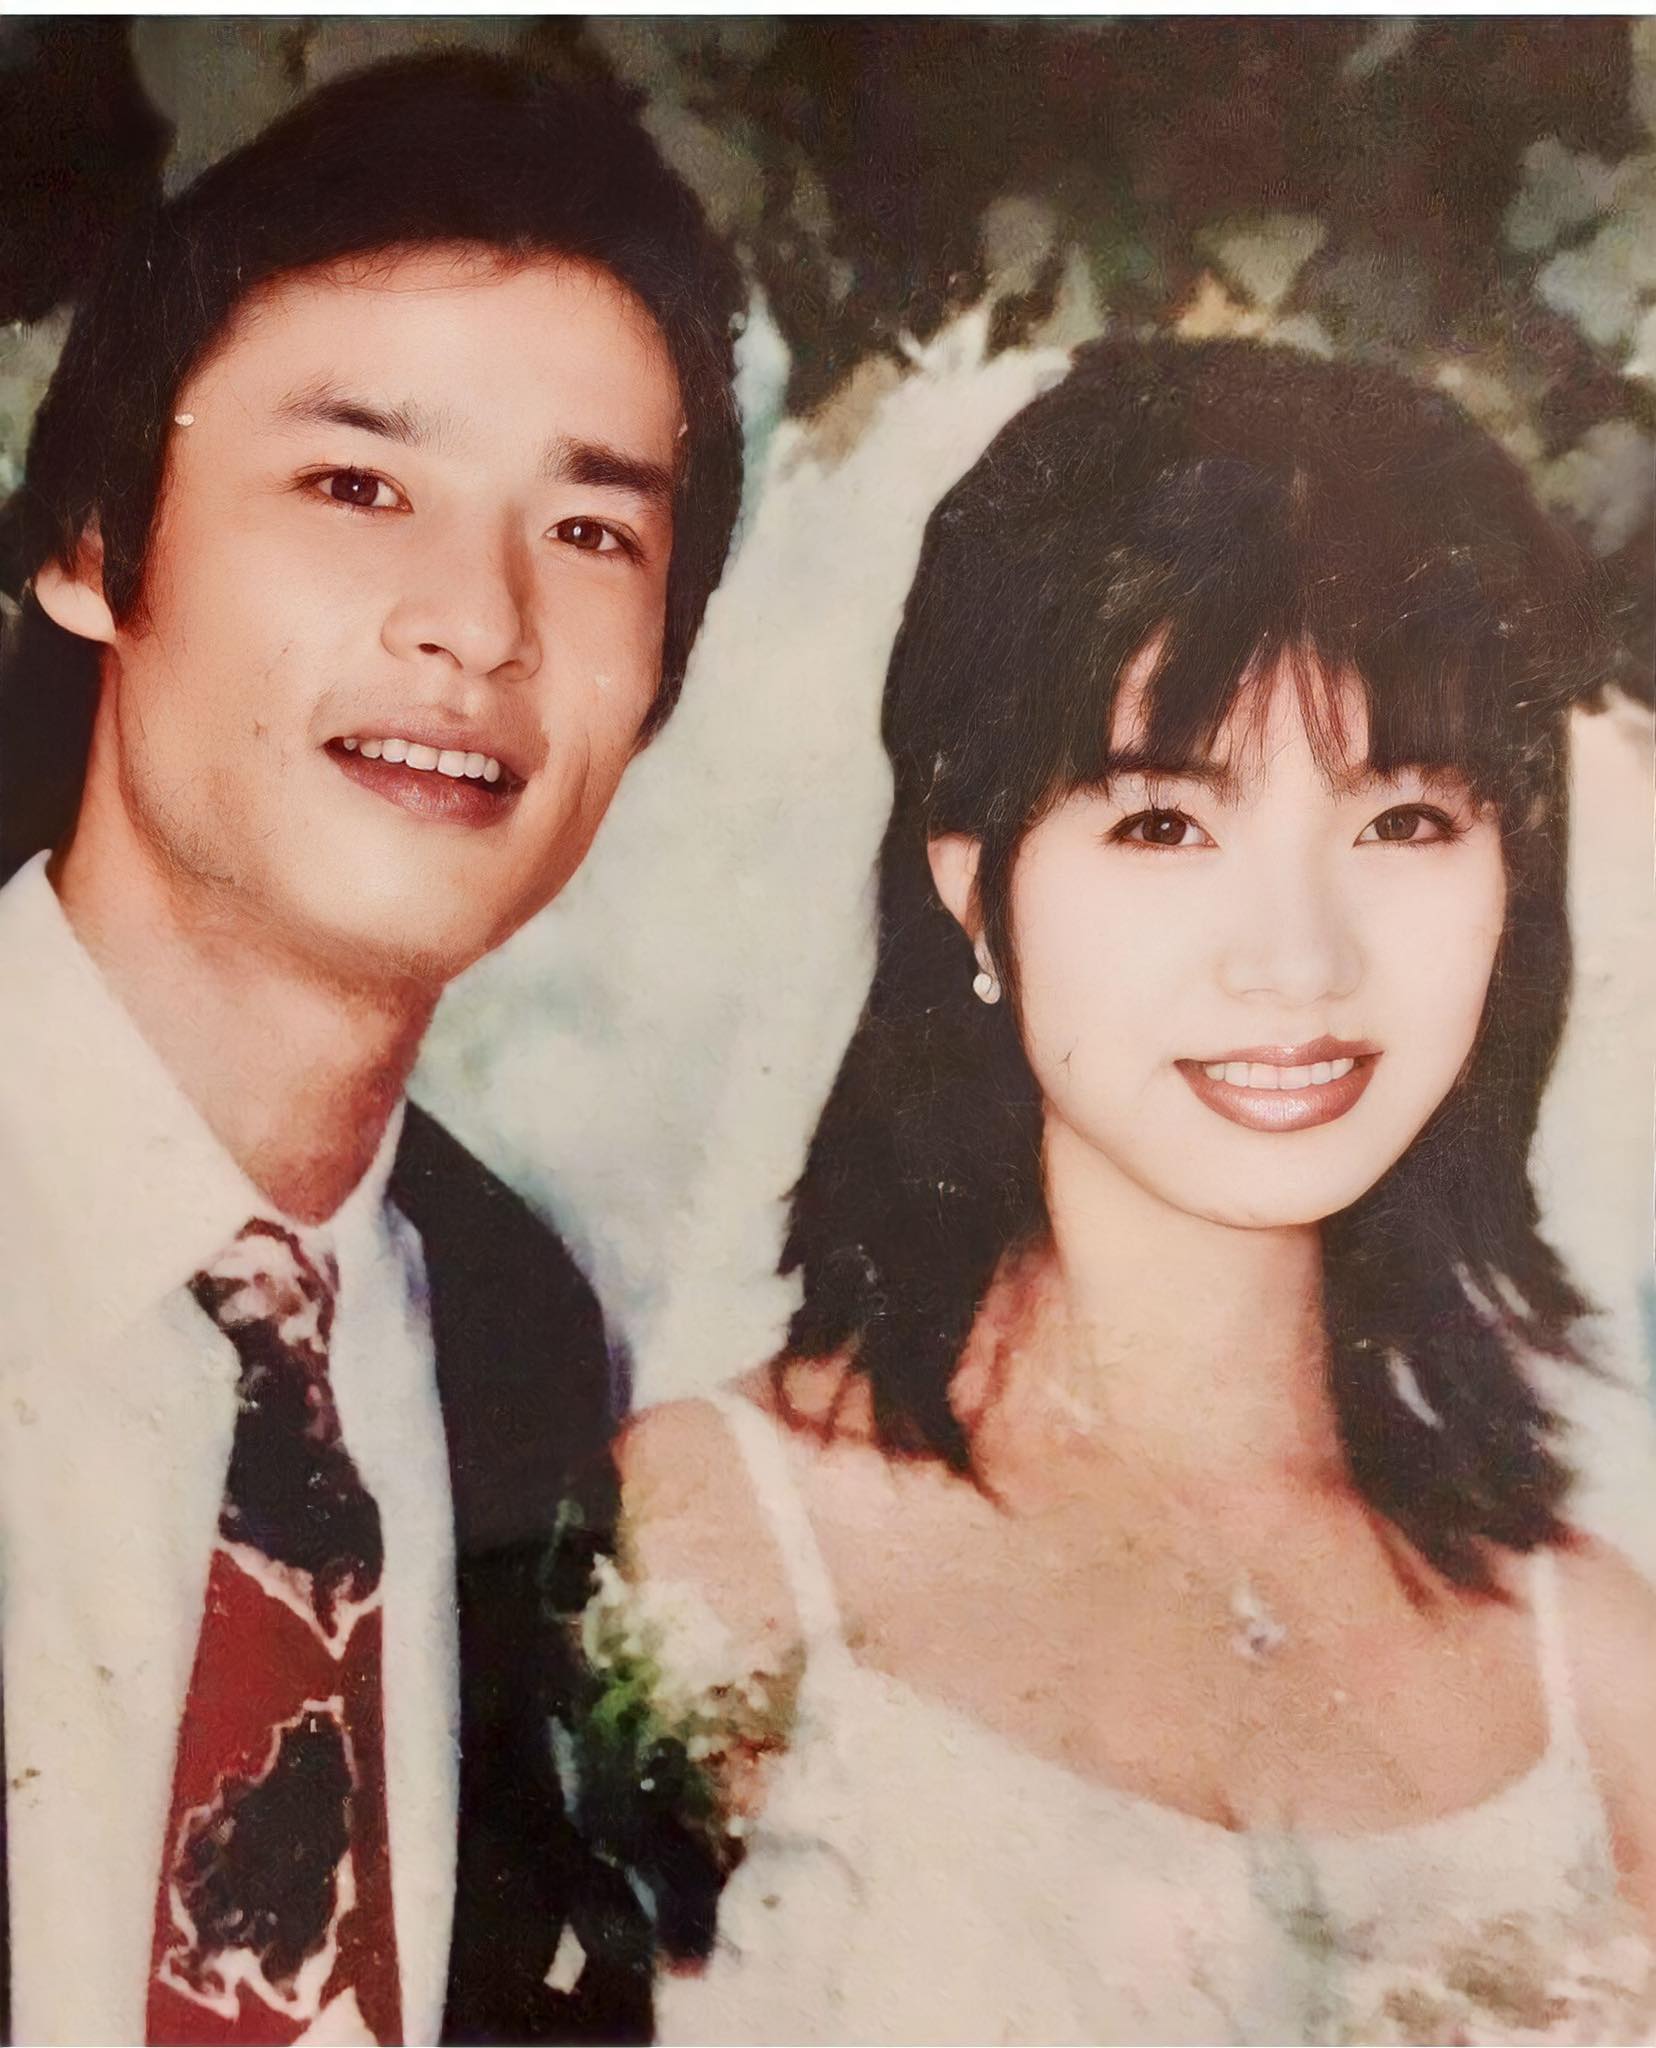 Nghệ sĩ Võ Hoài Nam và diễn viên Lan Anh trong ảnh cưới năm 1999. Ảnh: Nhân vật cung cấp